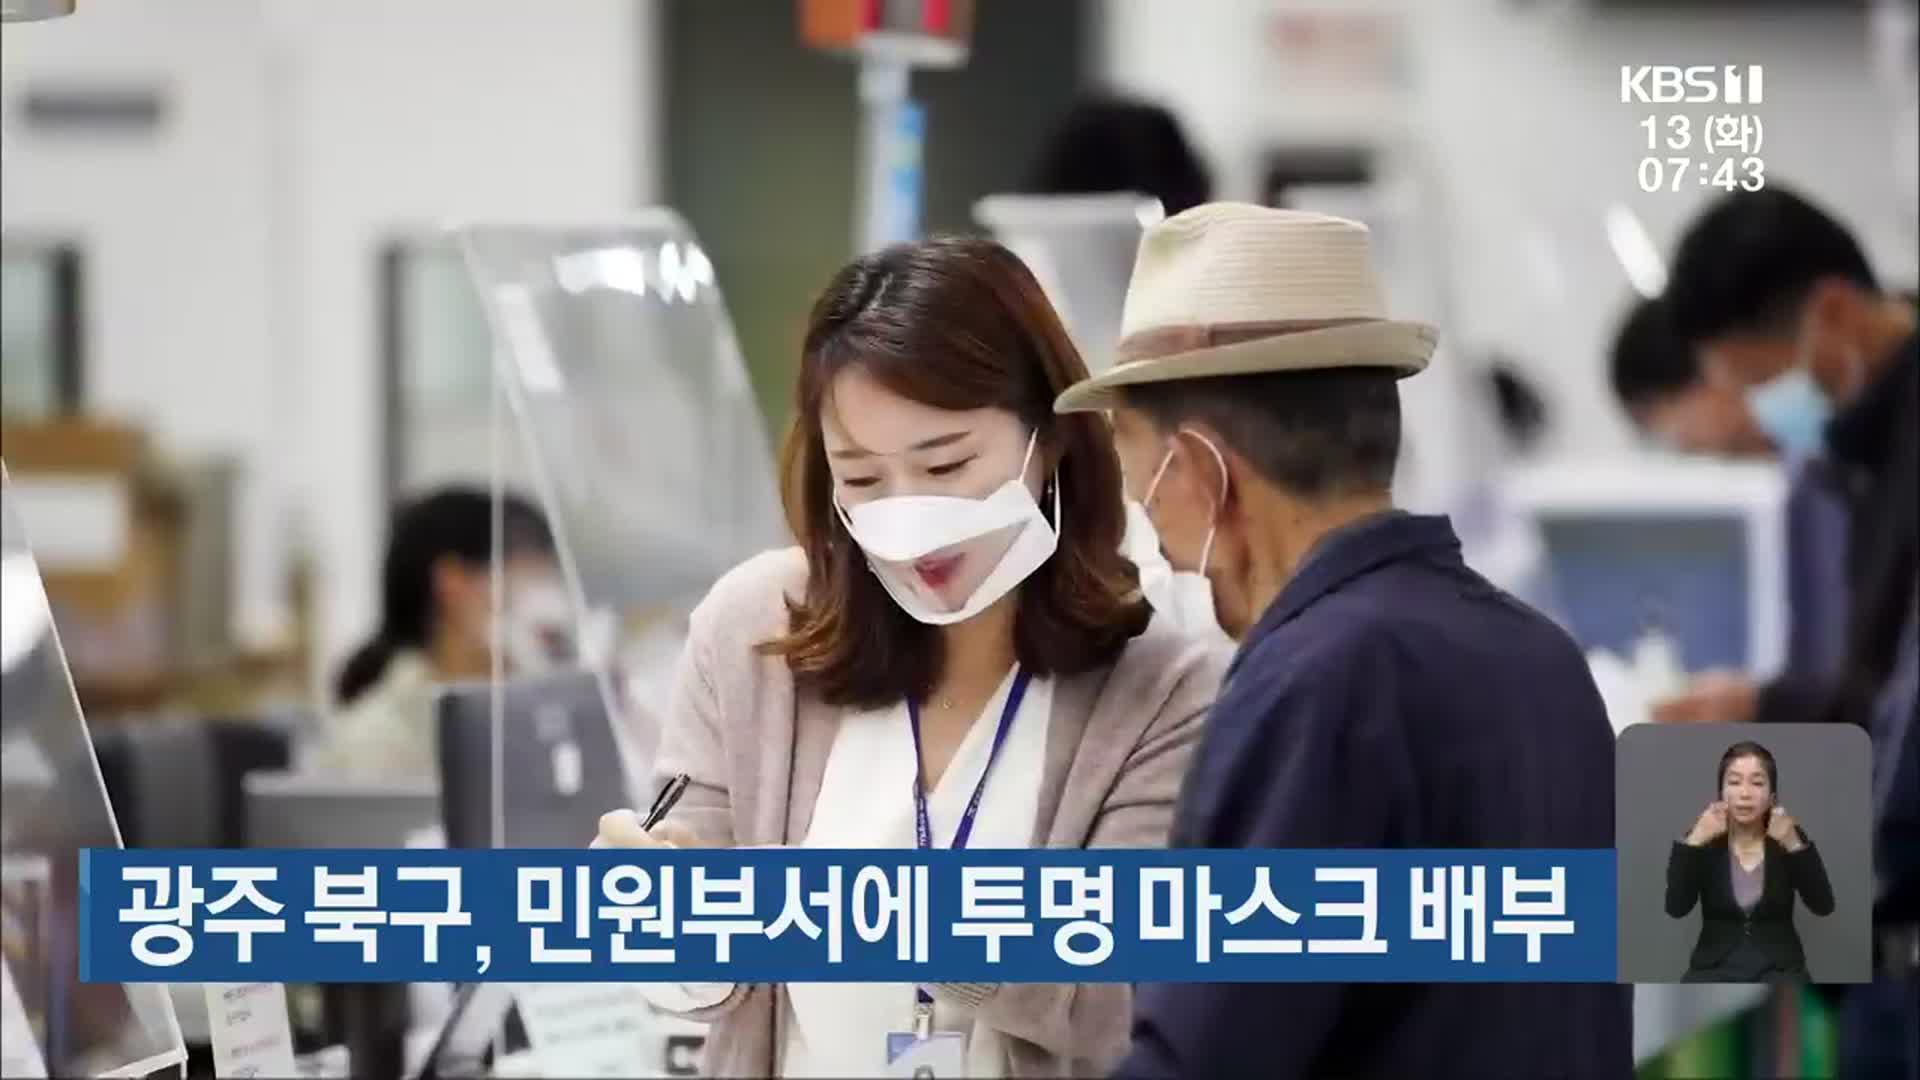 [단신브리핑] 광주 북구, 민원부서에 투명 마스크 배부 외